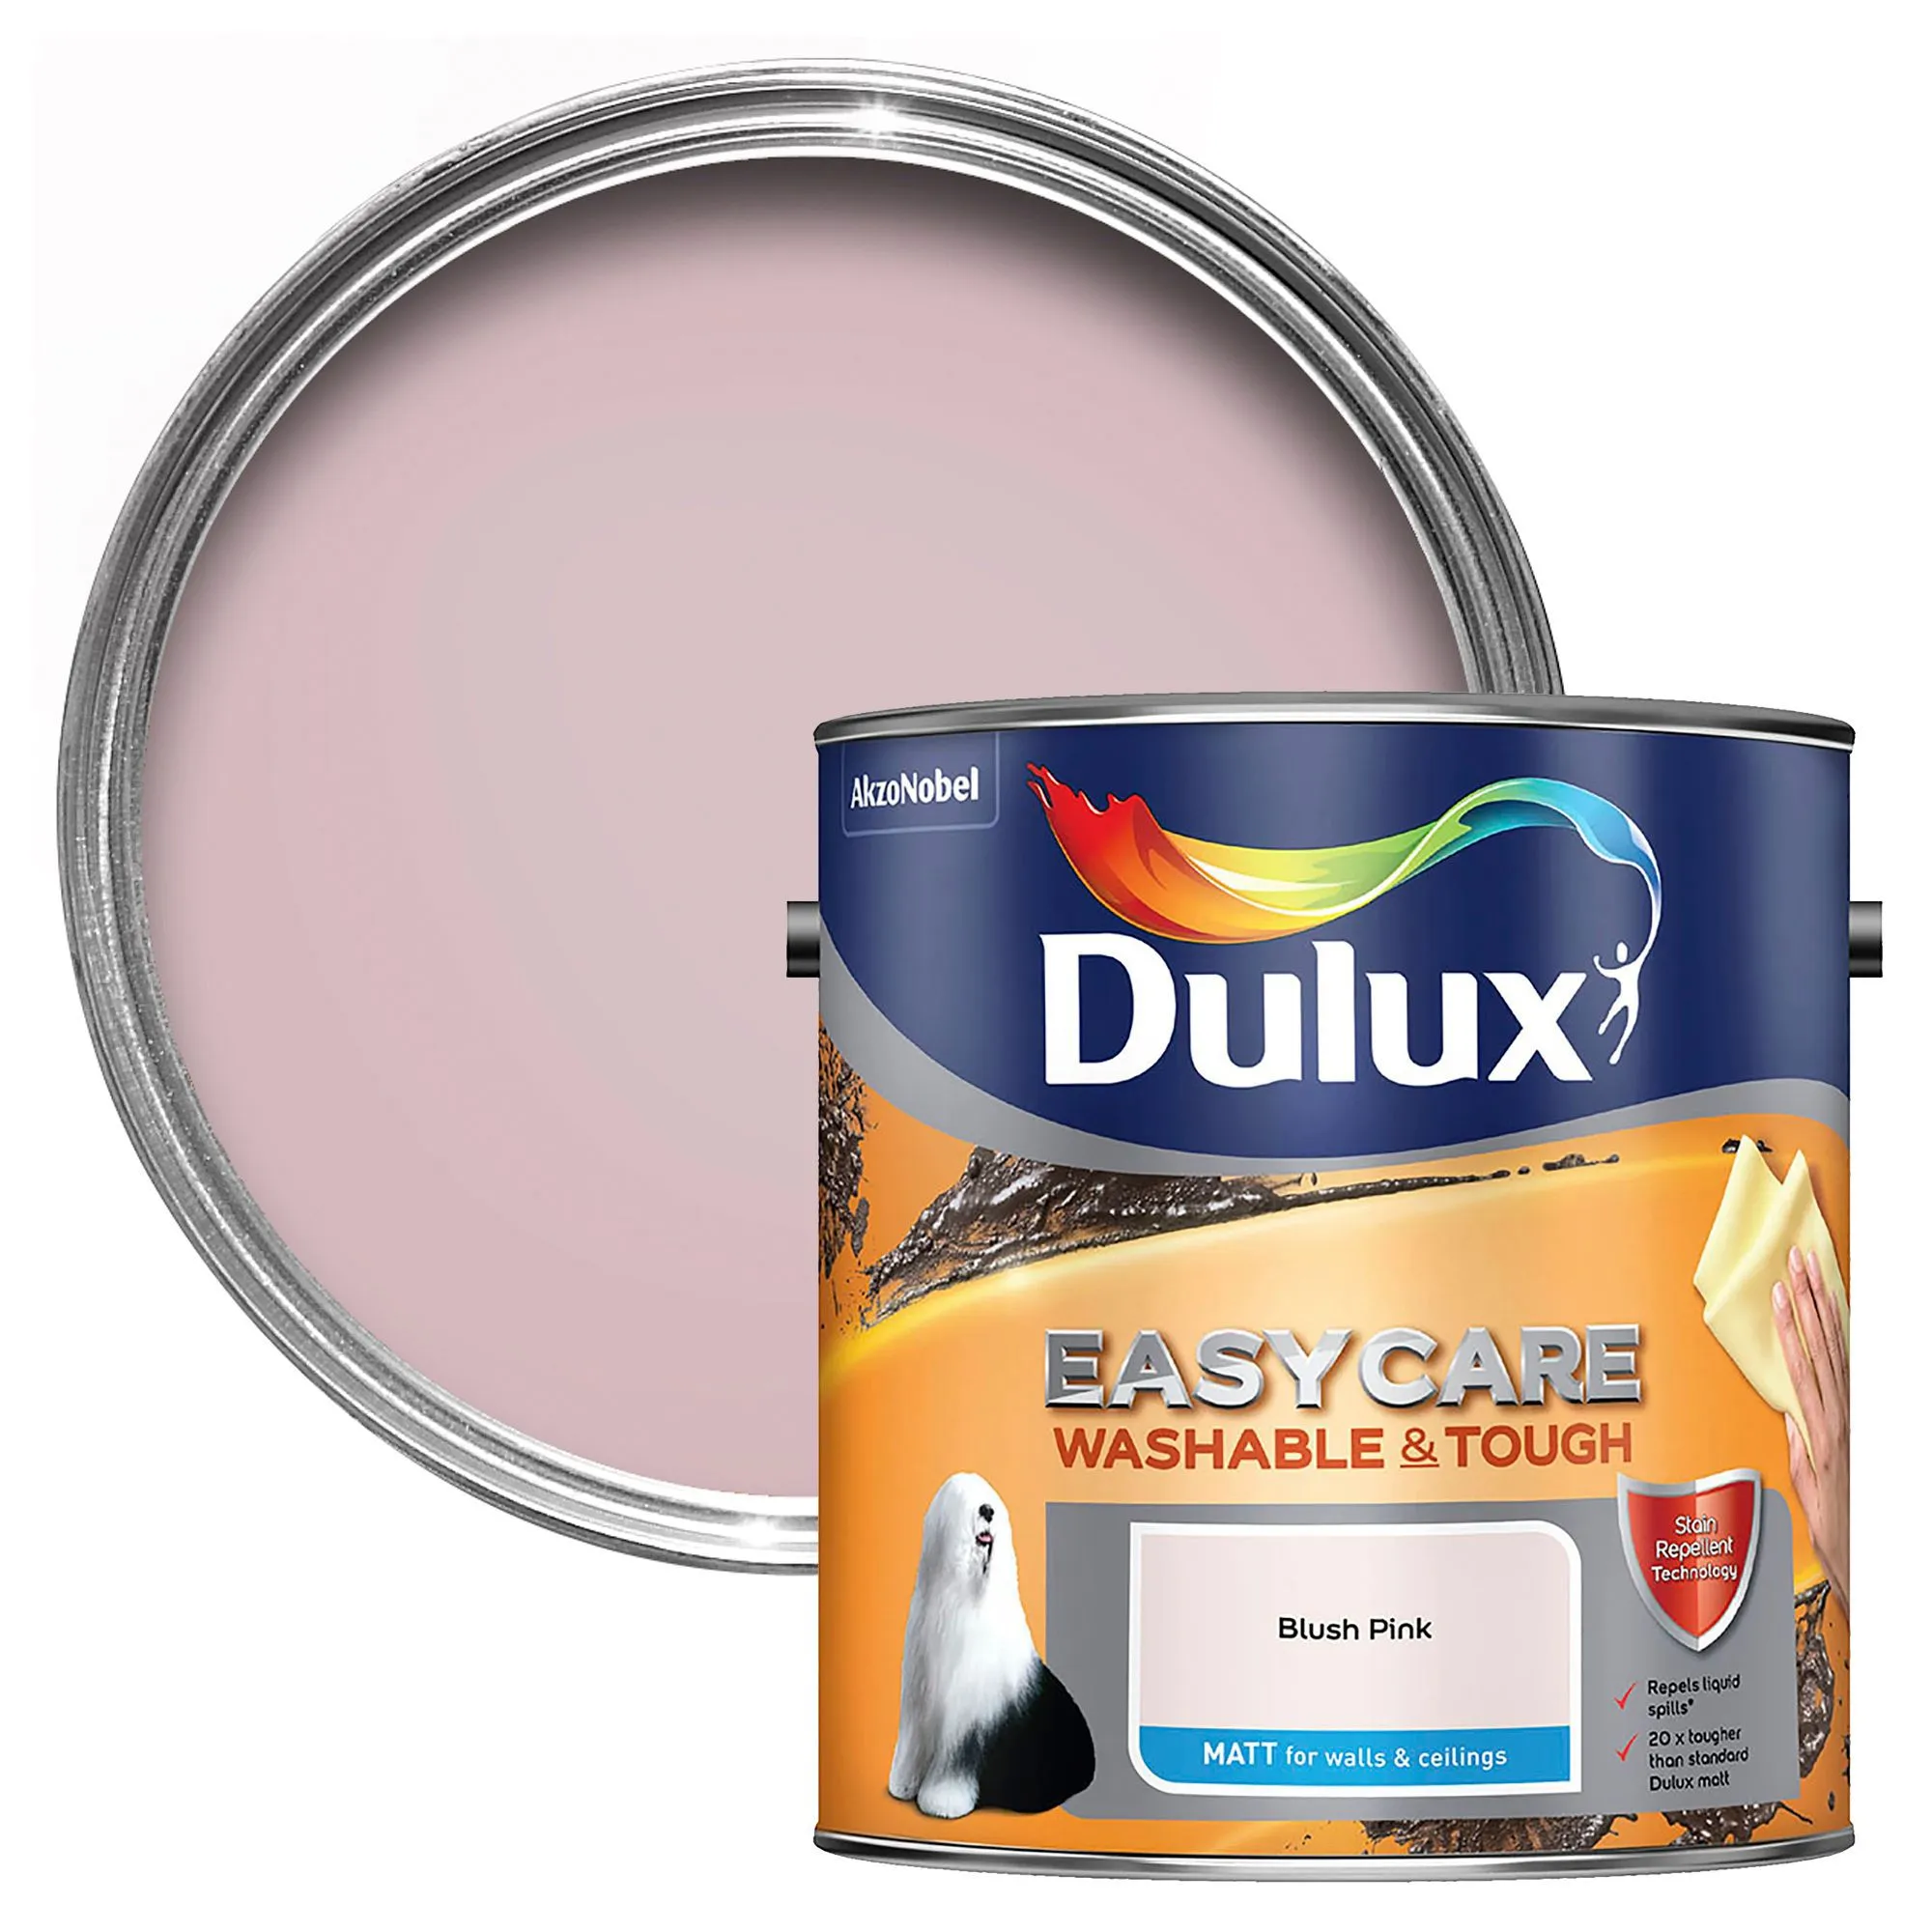 Dulux Easycare Washable & tough Blush pink Matt Emulsion paint 2.5L